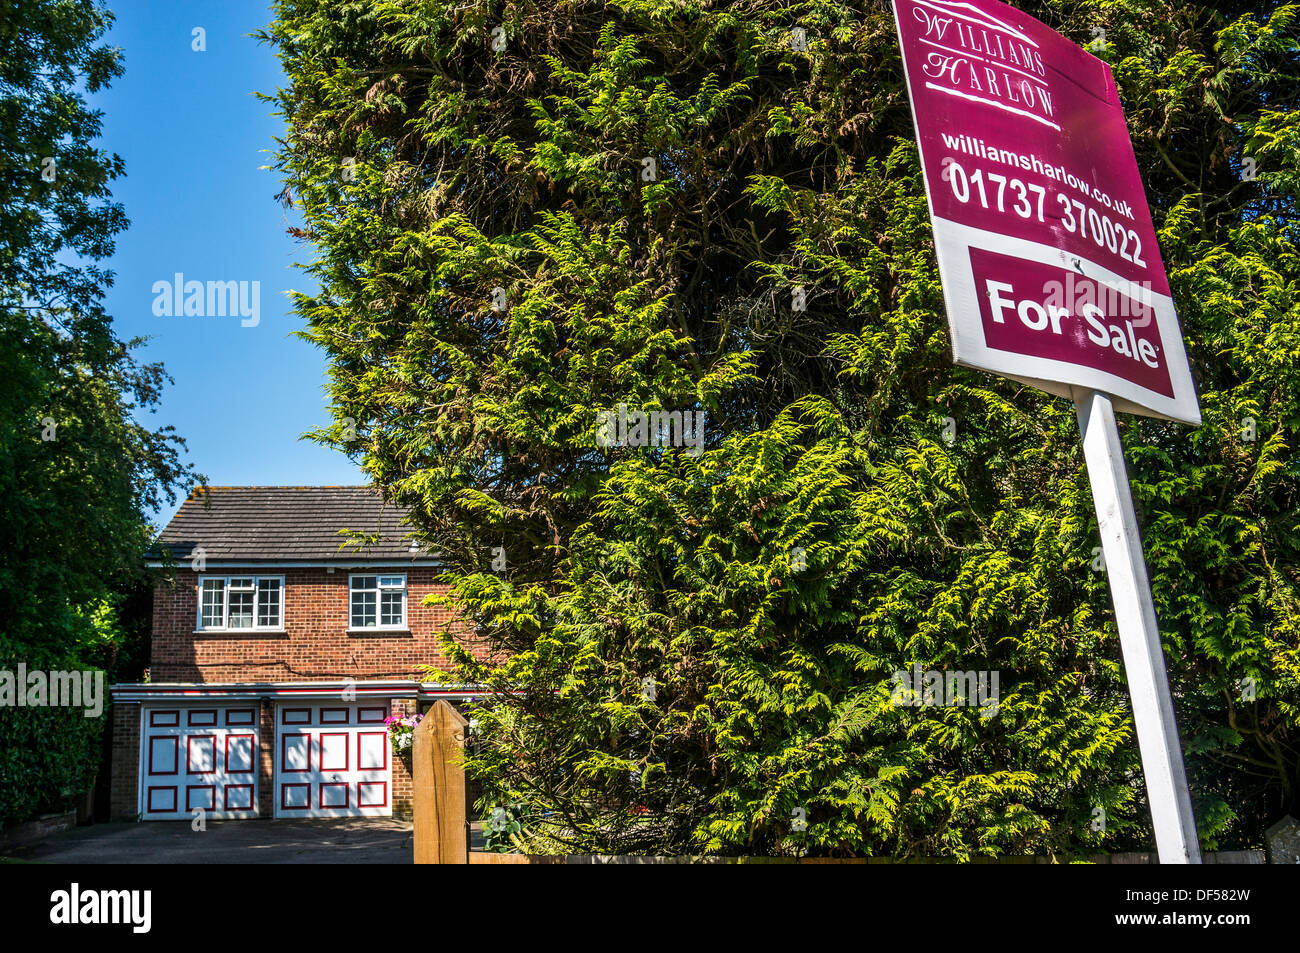 Immobilien (Real Estate) für Verkauf Zeichen vor einem großen Nadelbaum mit Haus im Hintergrund, in Banstead, Surrey, England, UK. Stockfoto